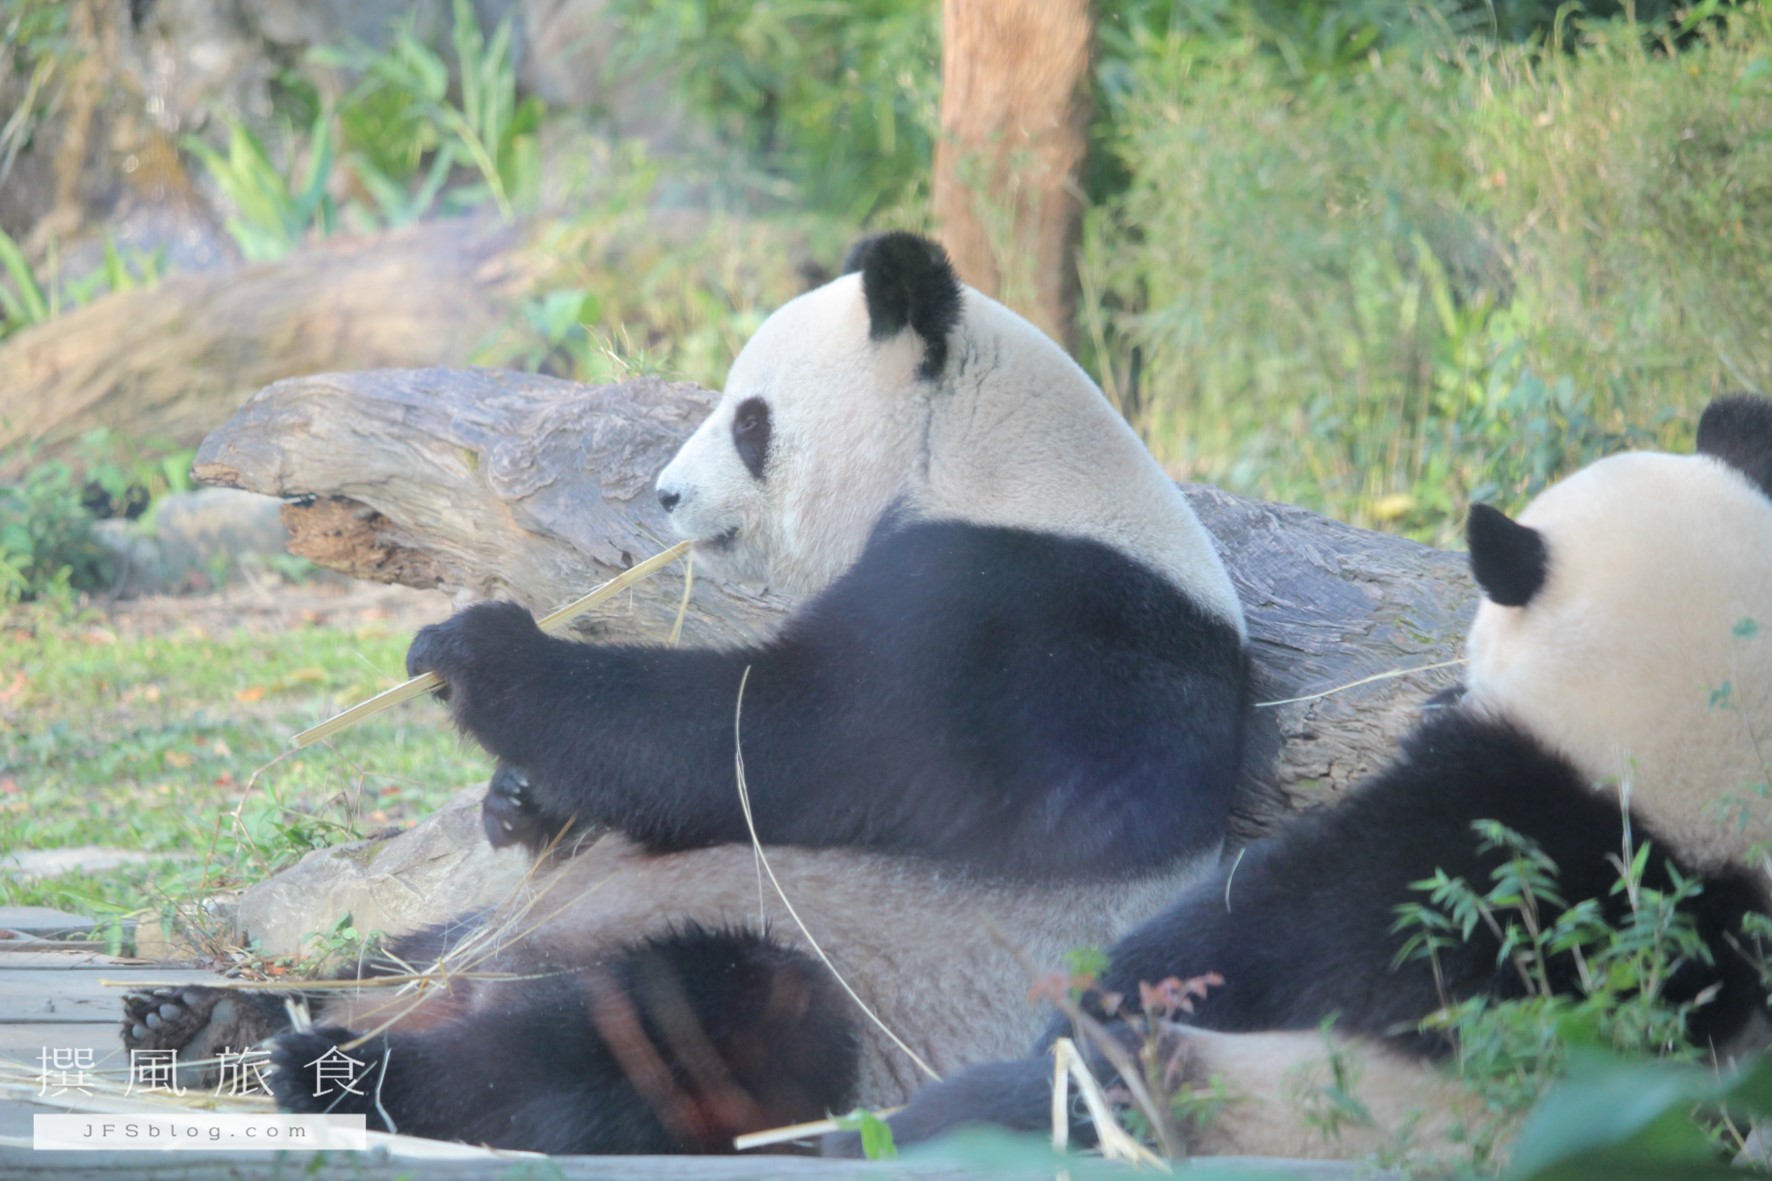 【台北活動】台北市立動物園「生物多樣性攝影展」照片投稿活動，快來分享動物攝影作品吧